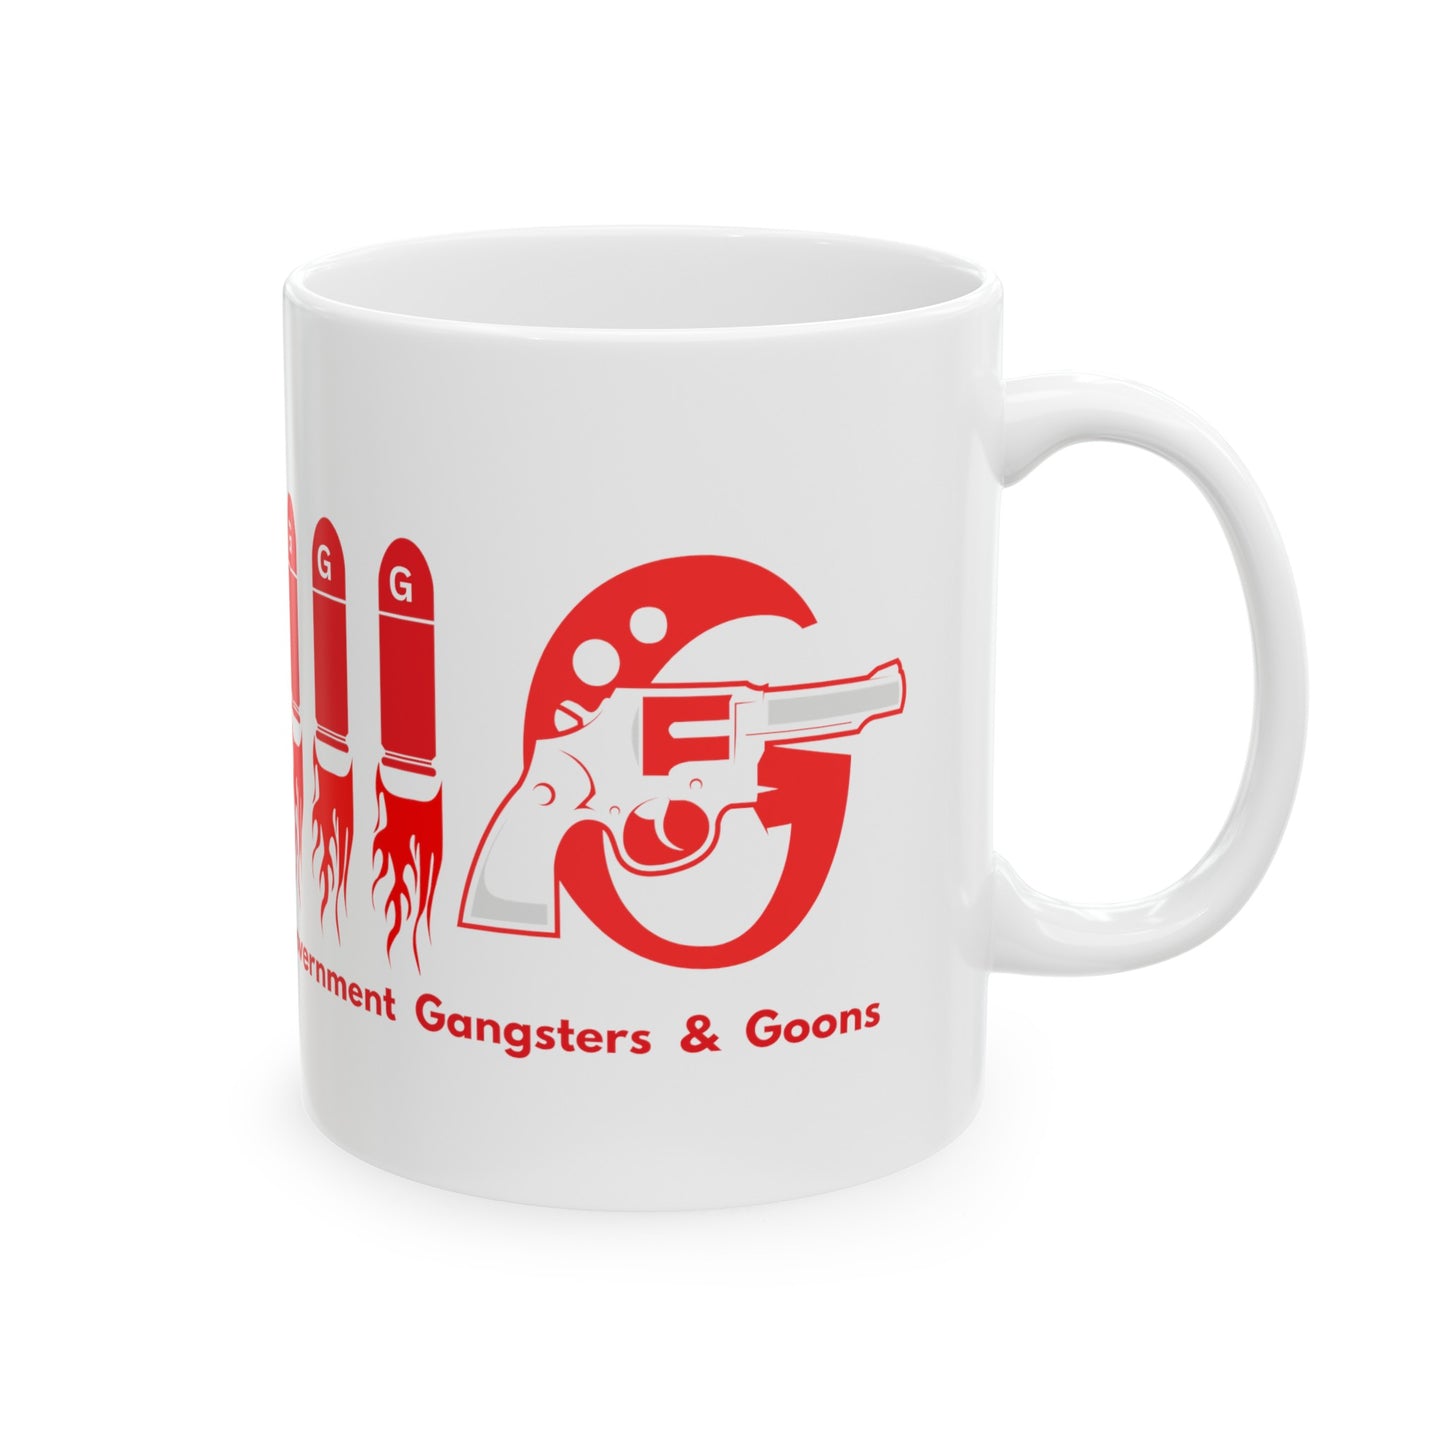 3Gs- Ceramic Mug, 11oz